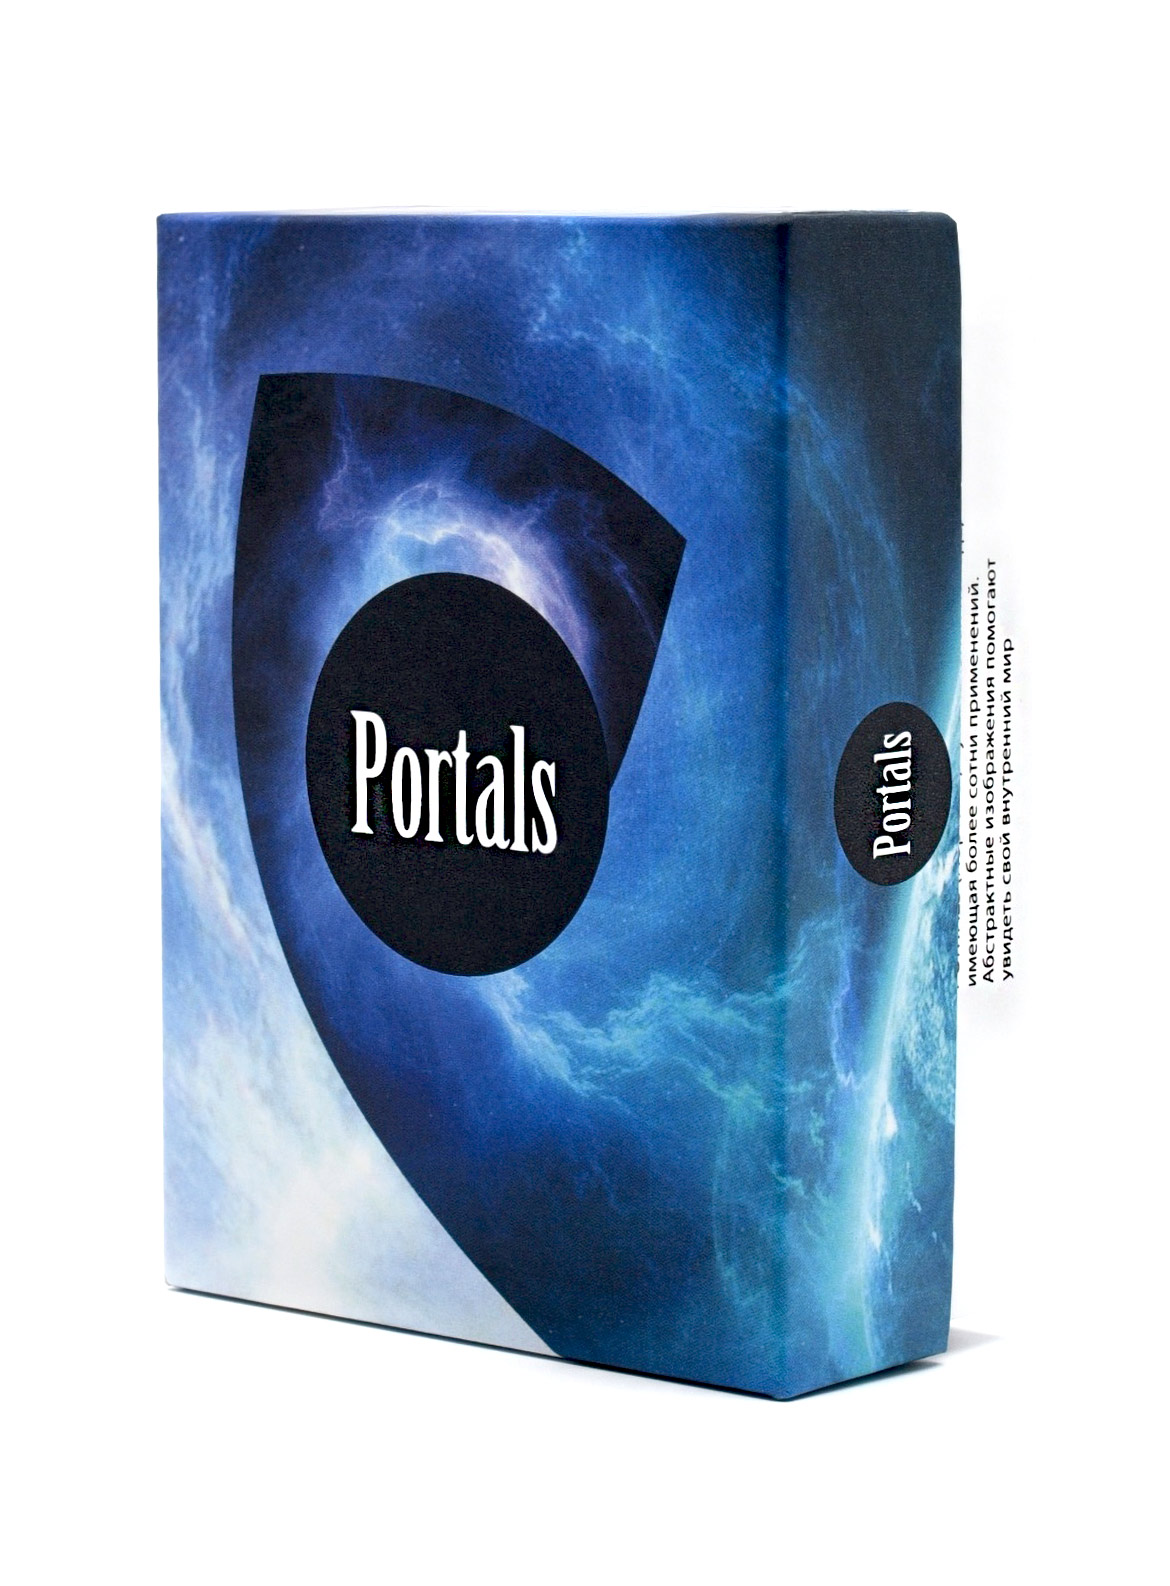 Метафорические ассоциативные карты "Порталы" (Portals)